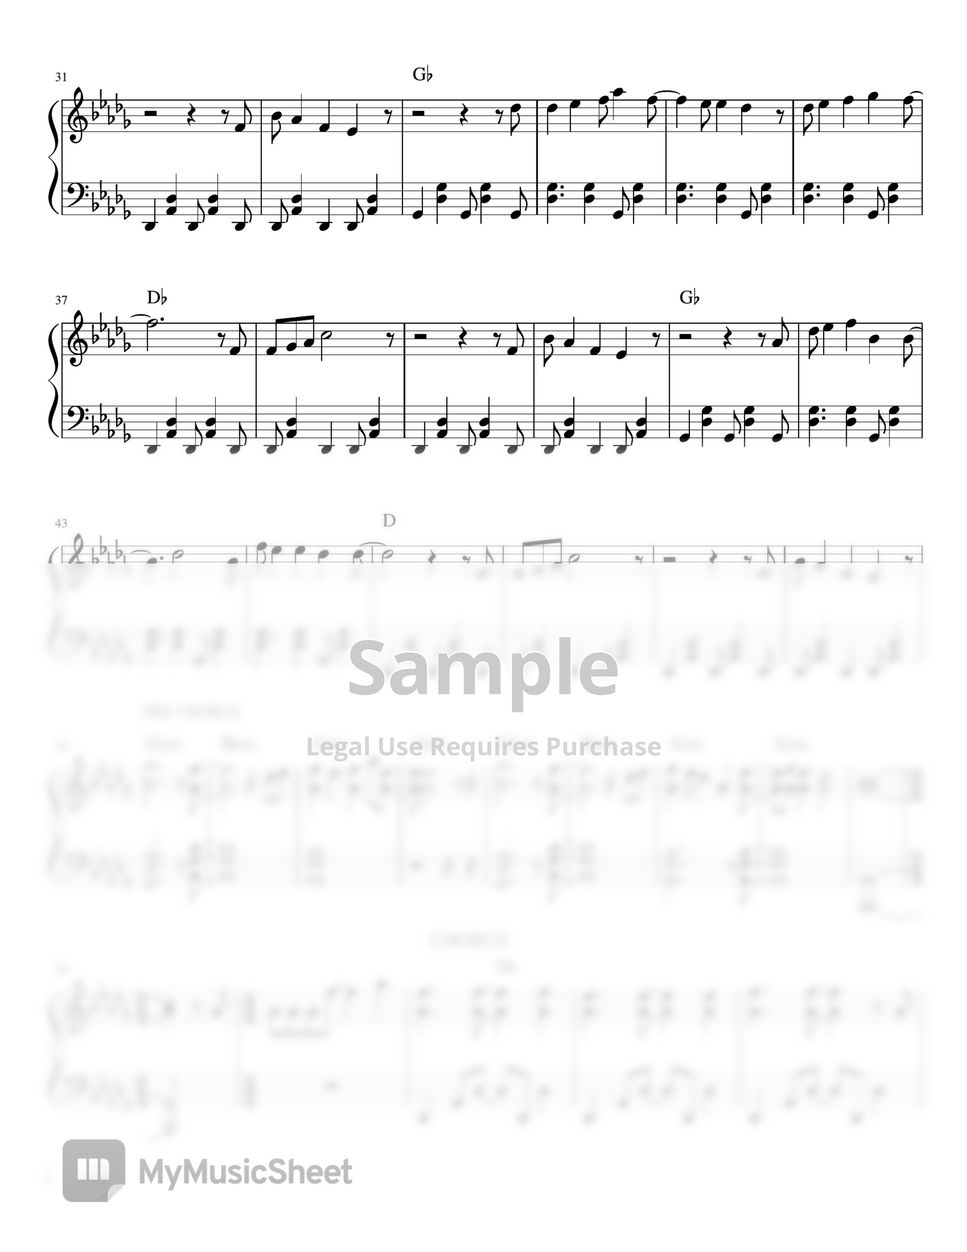 Ben&Ben - Fall (piano sheet music) by Mel's Music Corner